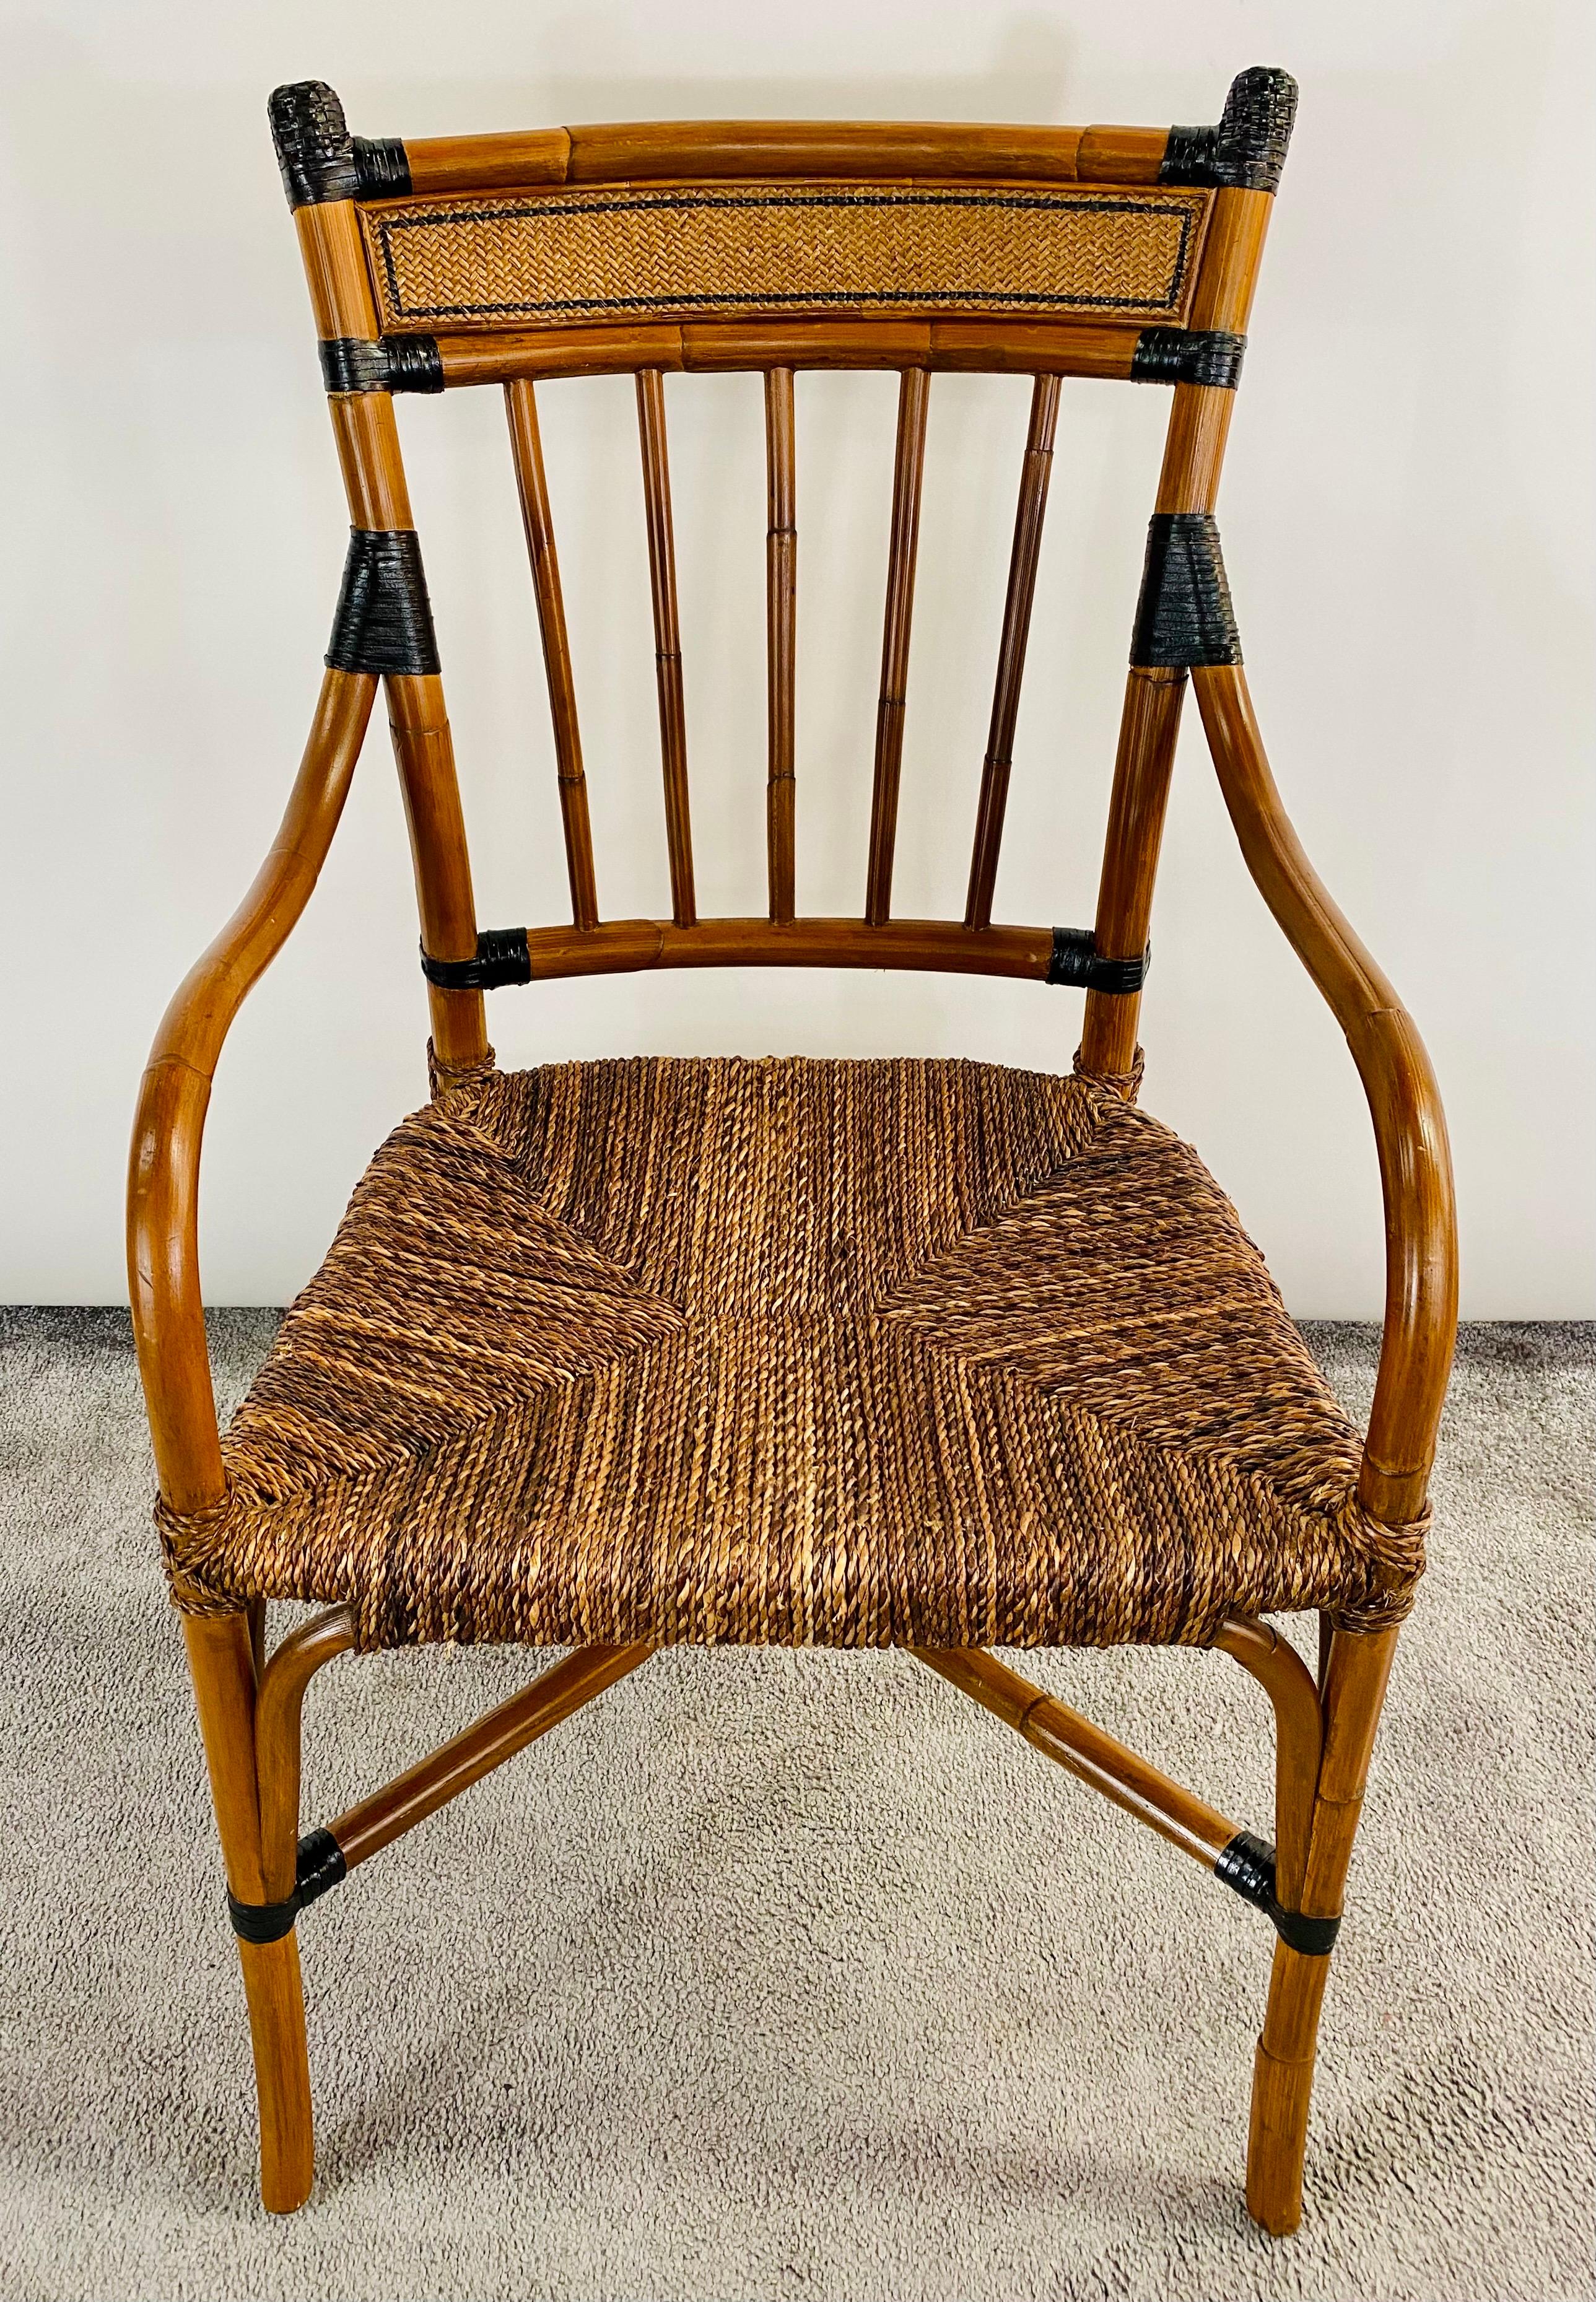 Un fauteuil de qualité Mid Century Boho Chic en faux bambou et rotin. Finement sculptée, la chaise présente des bras incurvés reposant sur un siège en rotin. Le dossier de la chaise est légèrement incurvé pour plus de confort et agrémenté d'un